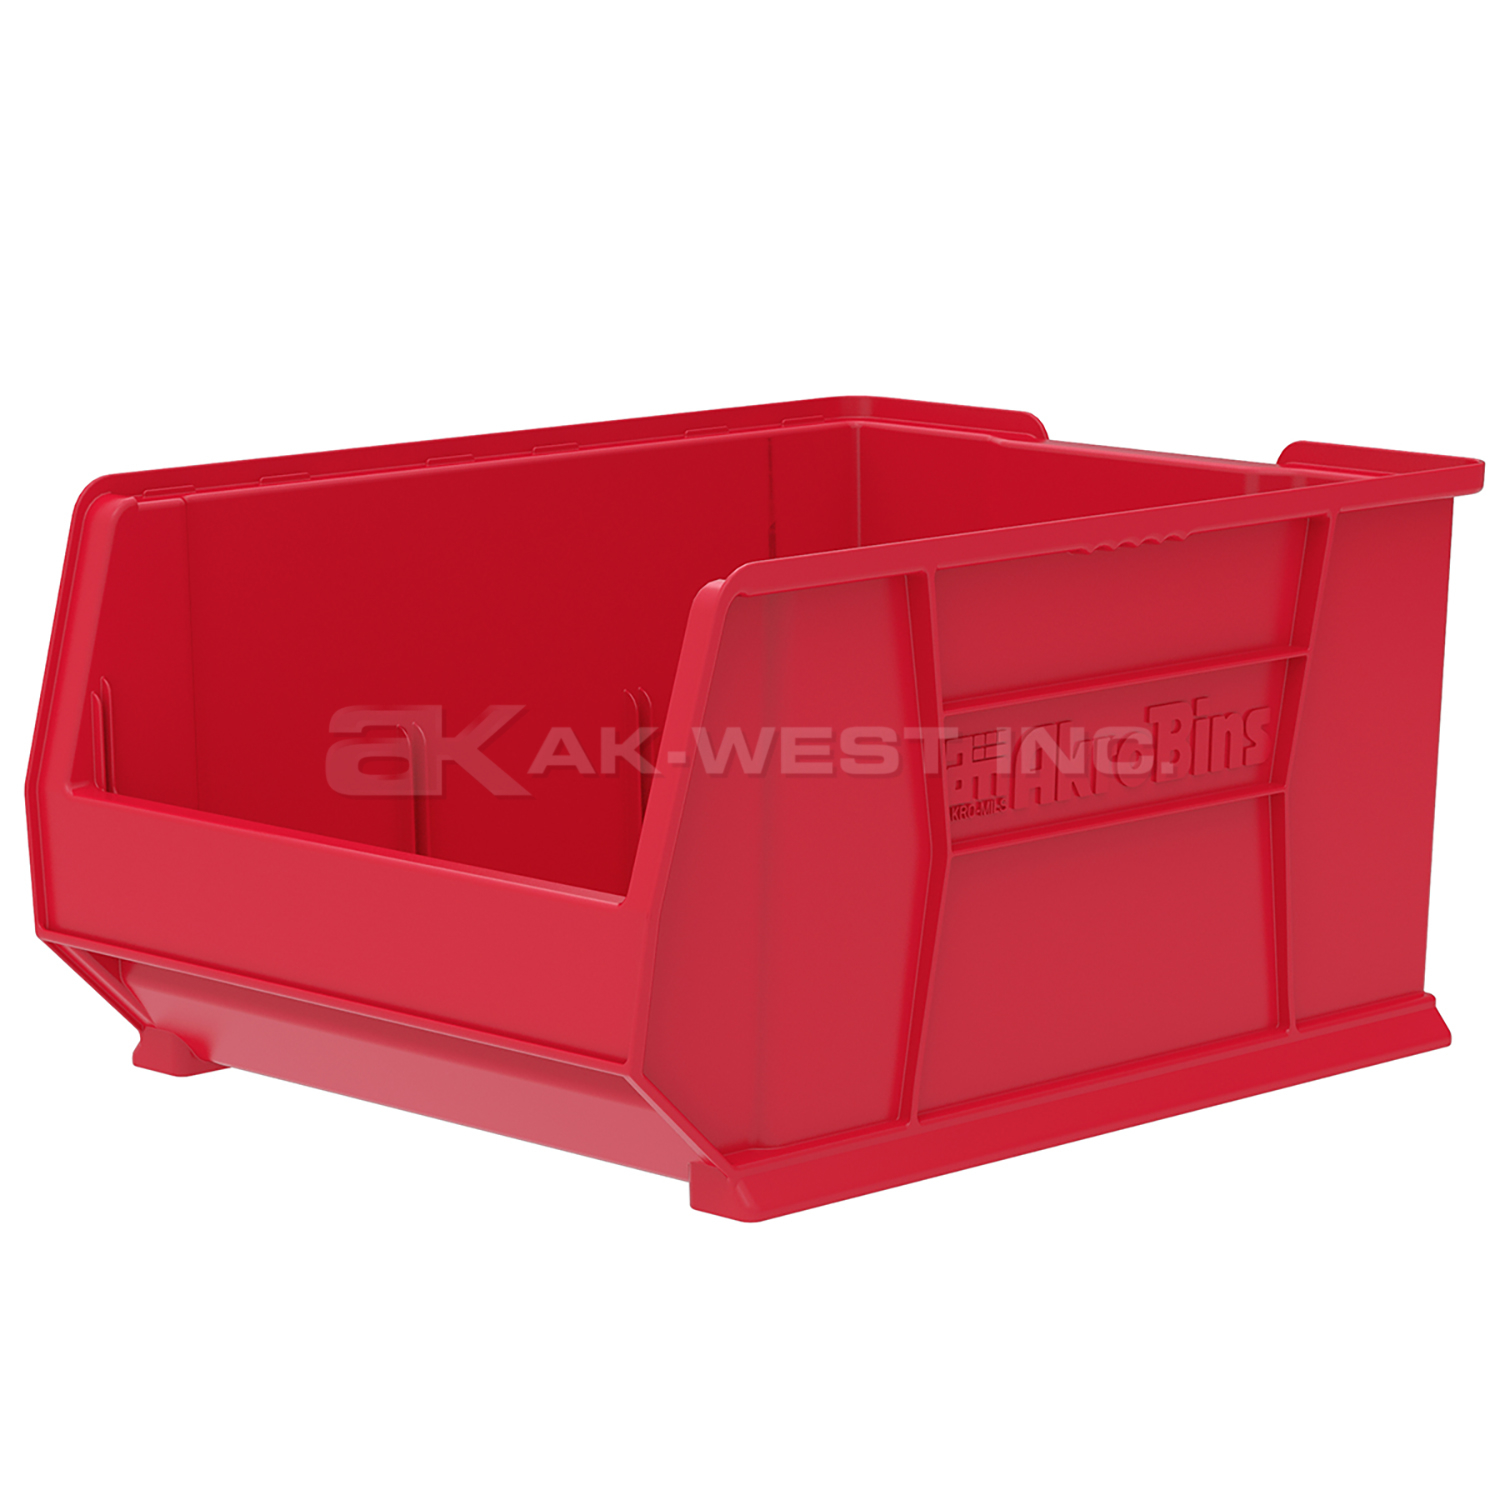 Red, 23-7/8" x 18-1/4" x 12" Stacking Shelf Bin (1 Per Carton)